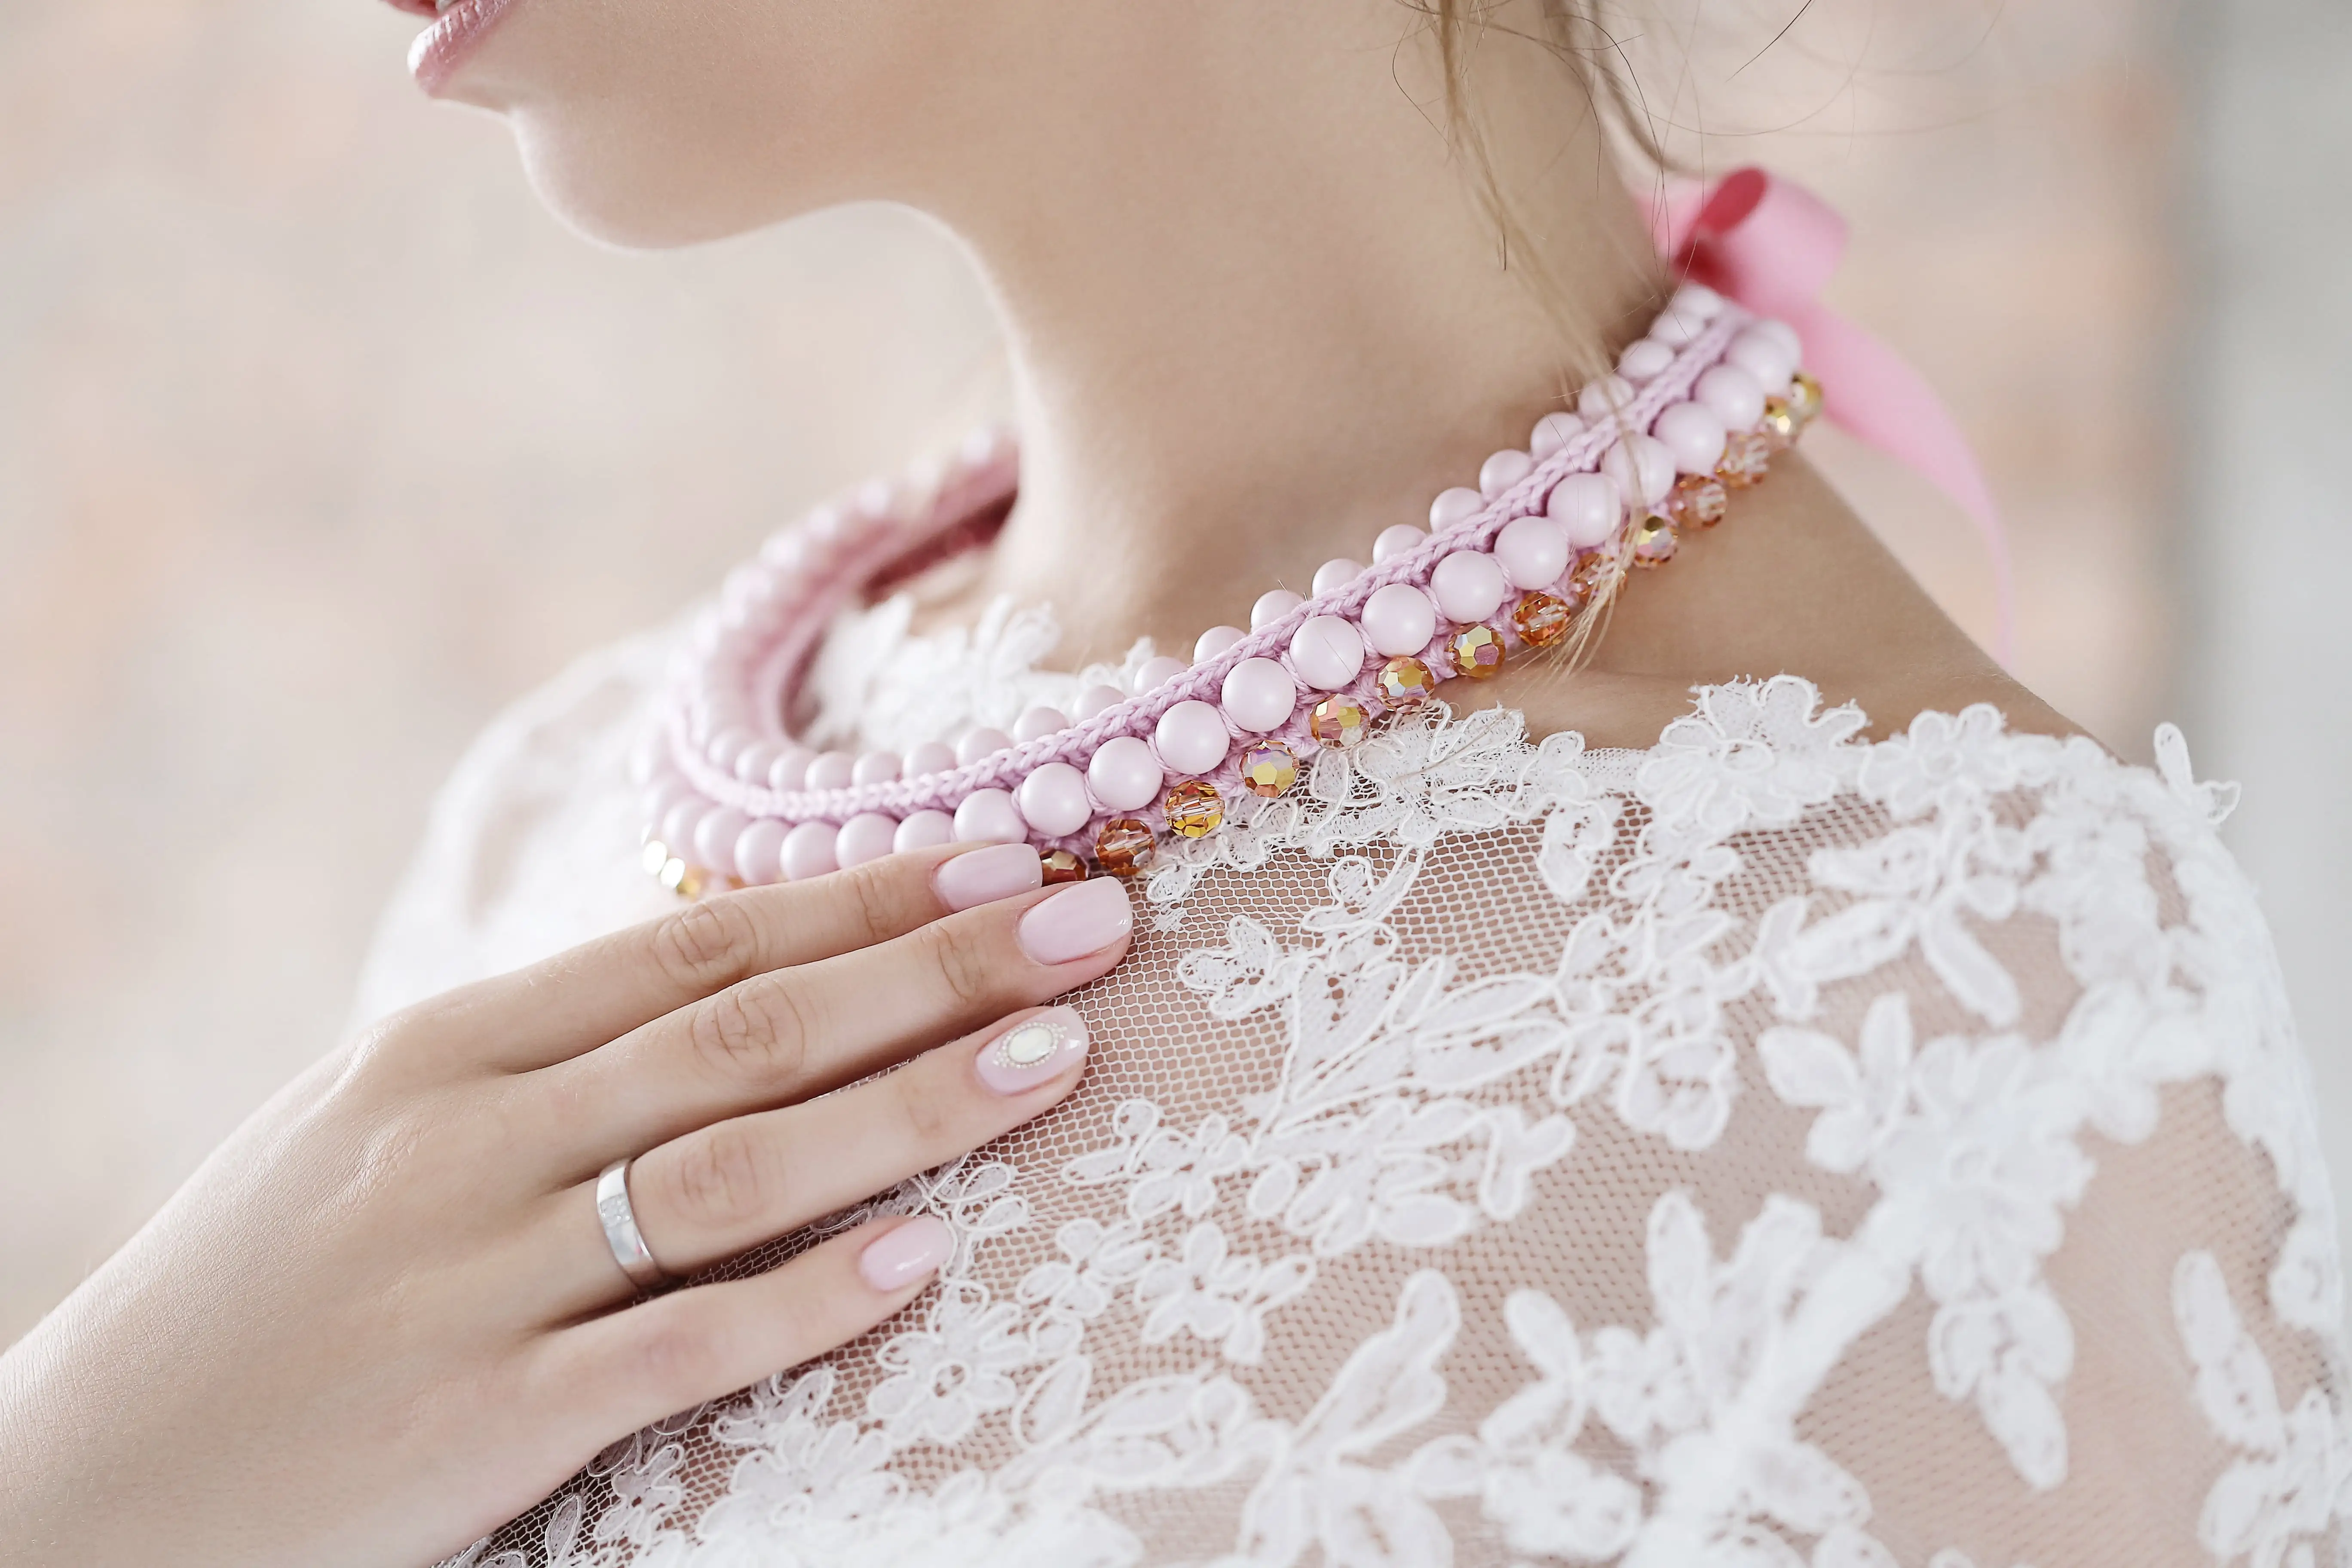 Ružový perlový náhrdelník na krku ženy v bielych šatách